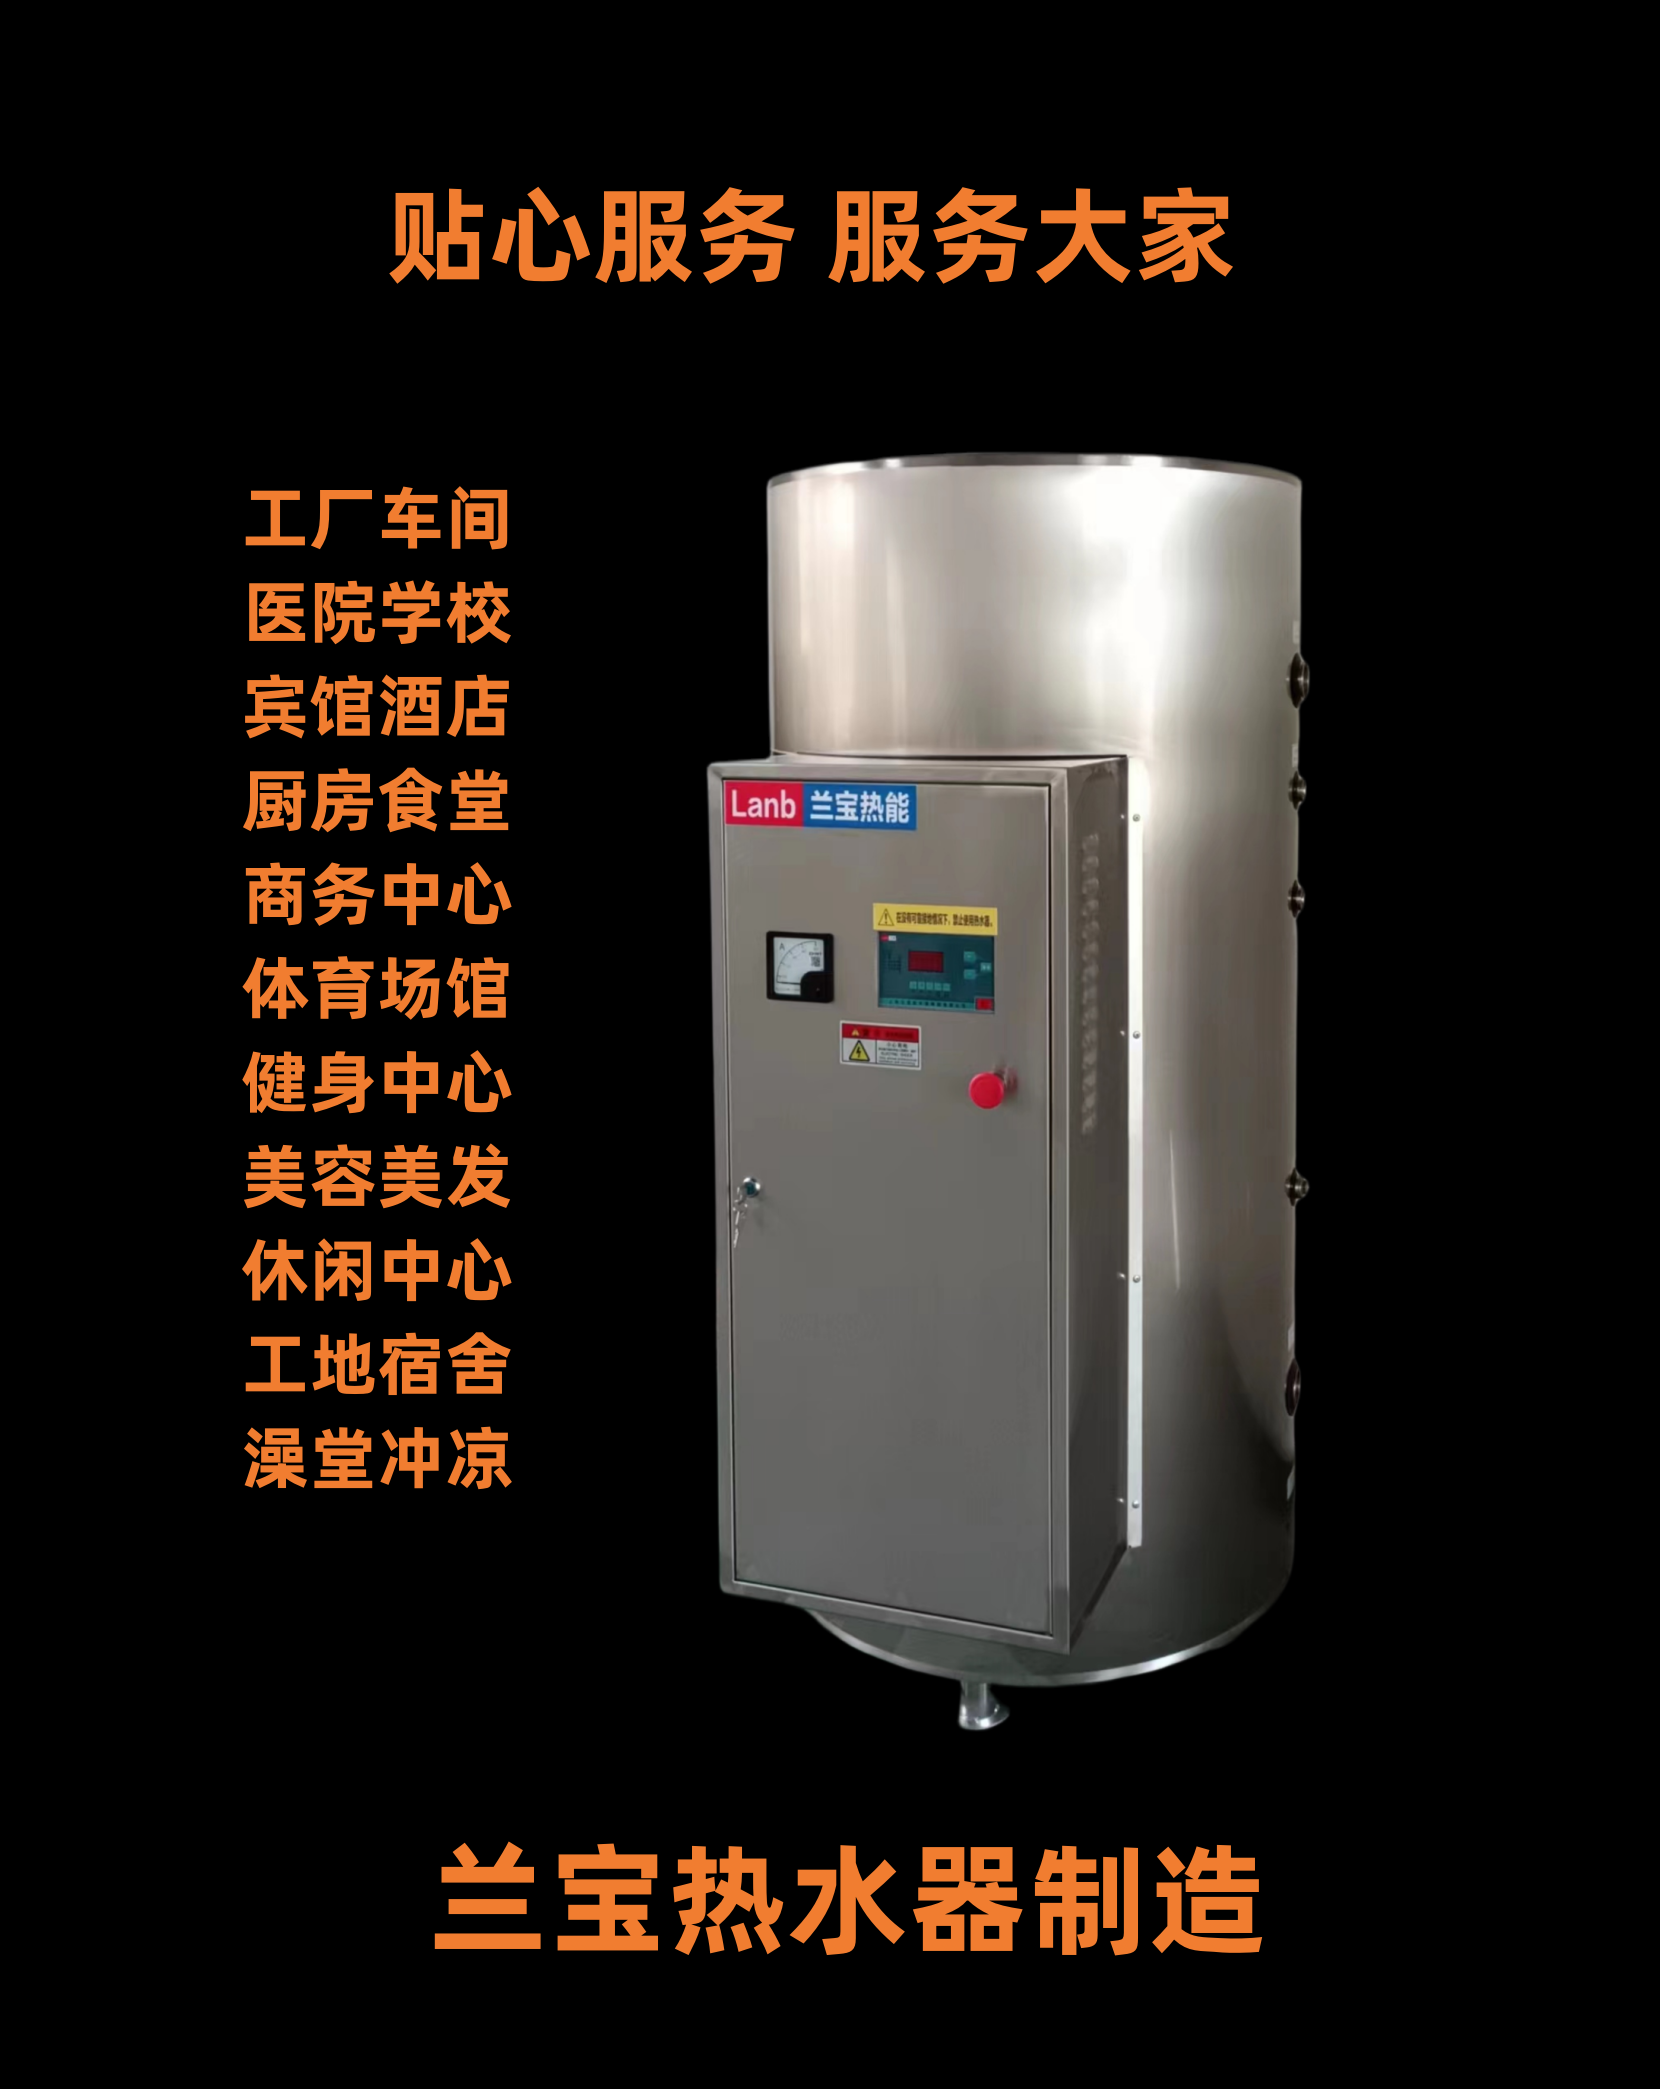 电热水器JLB-200-24热水器 电热水锅炉